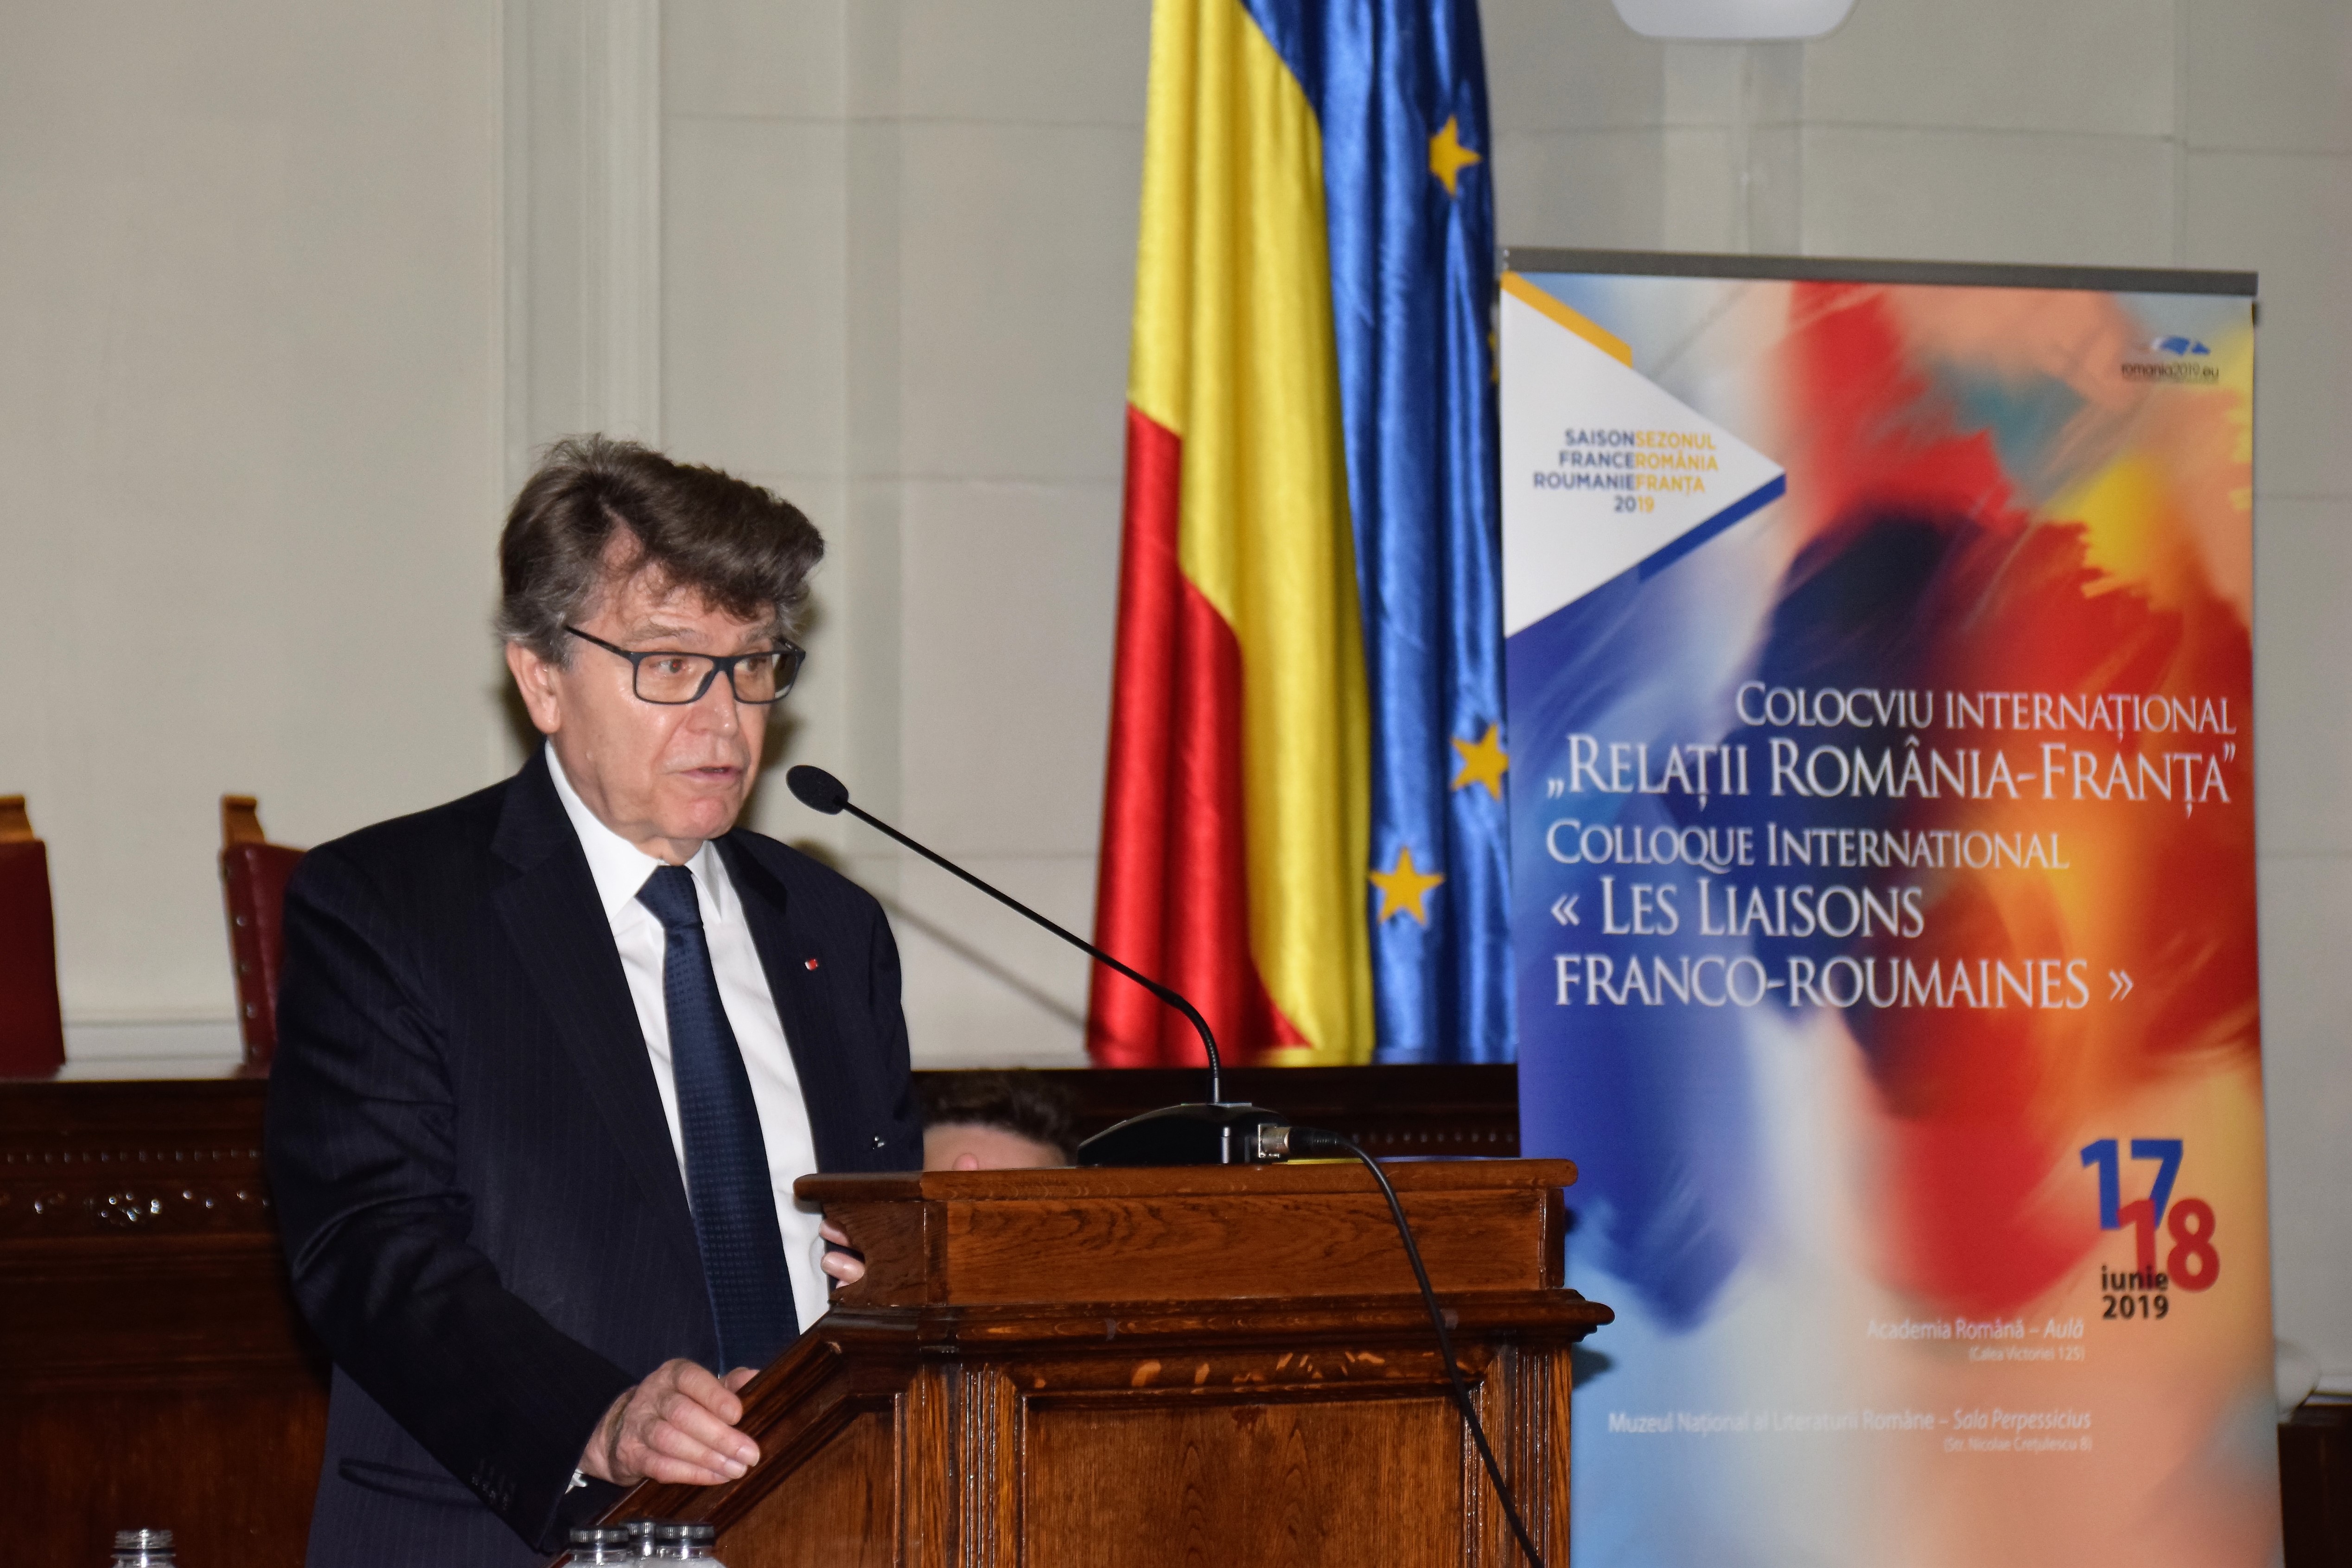 Thierry de Montbrial colloque "les liaisons franco-roumaines" juin 2019